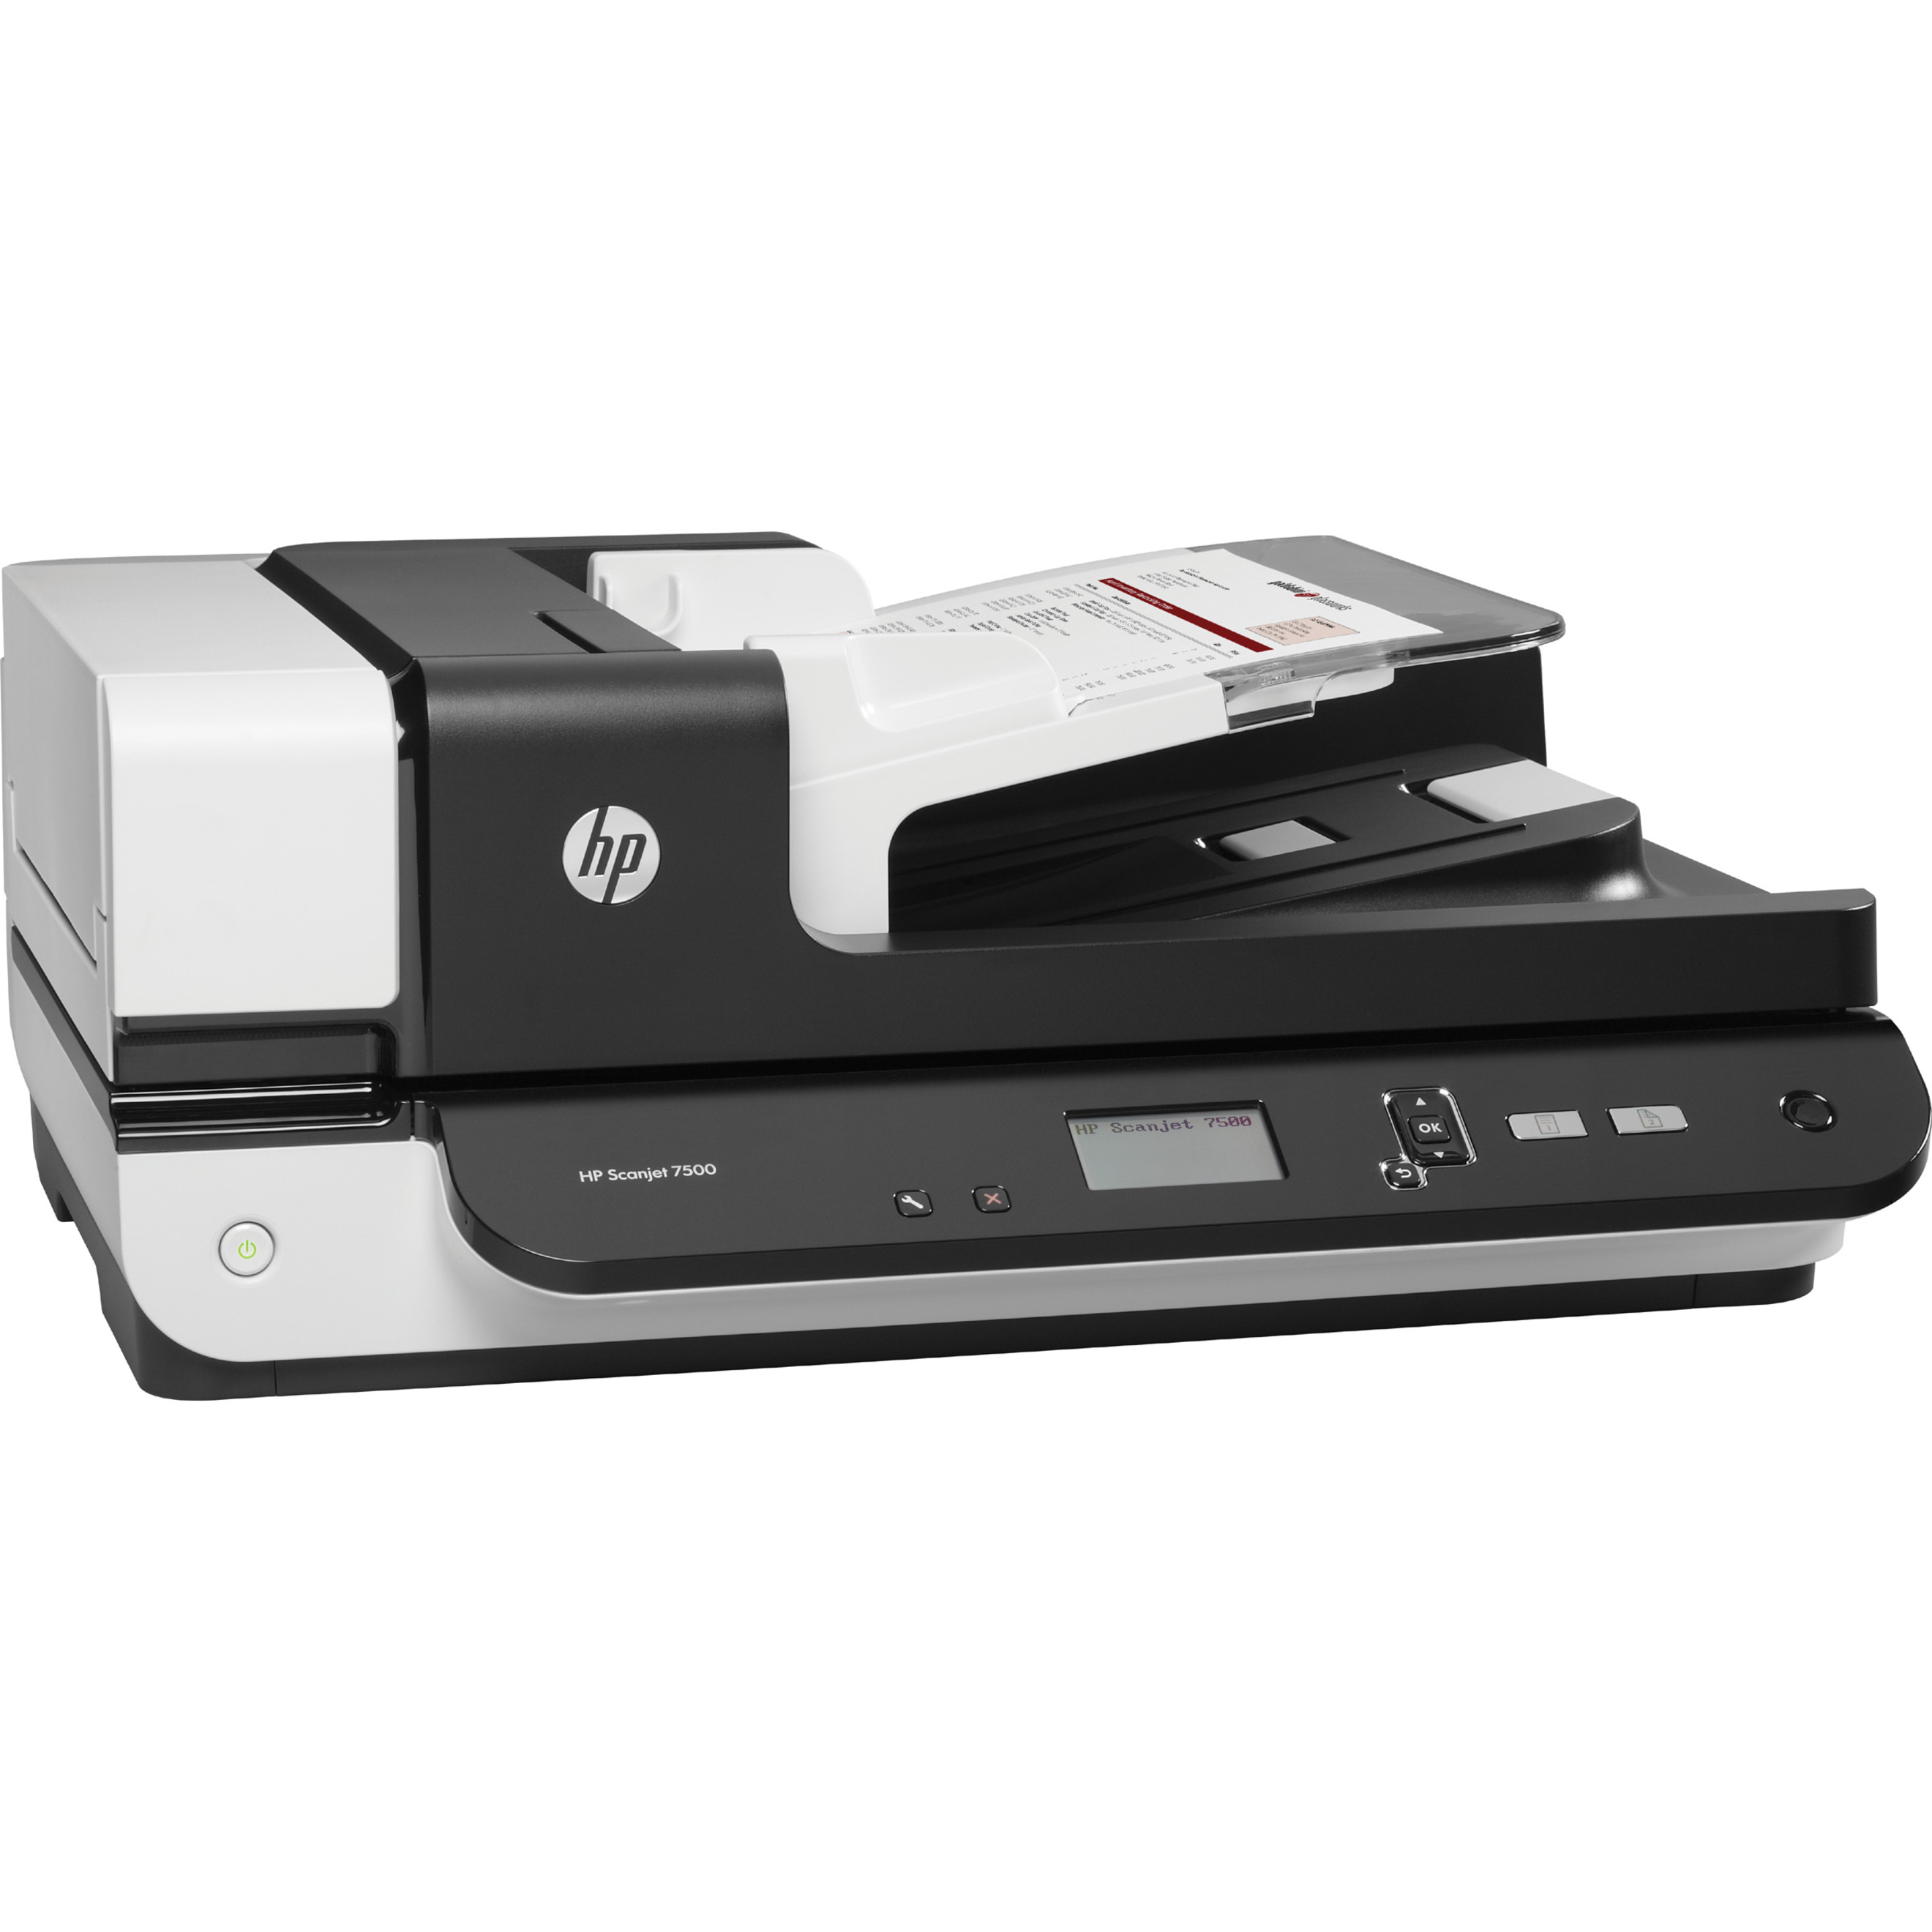 HP Scanjet 7500 Flatbed Scanner, 600 dpi Optical - image 3 of 5